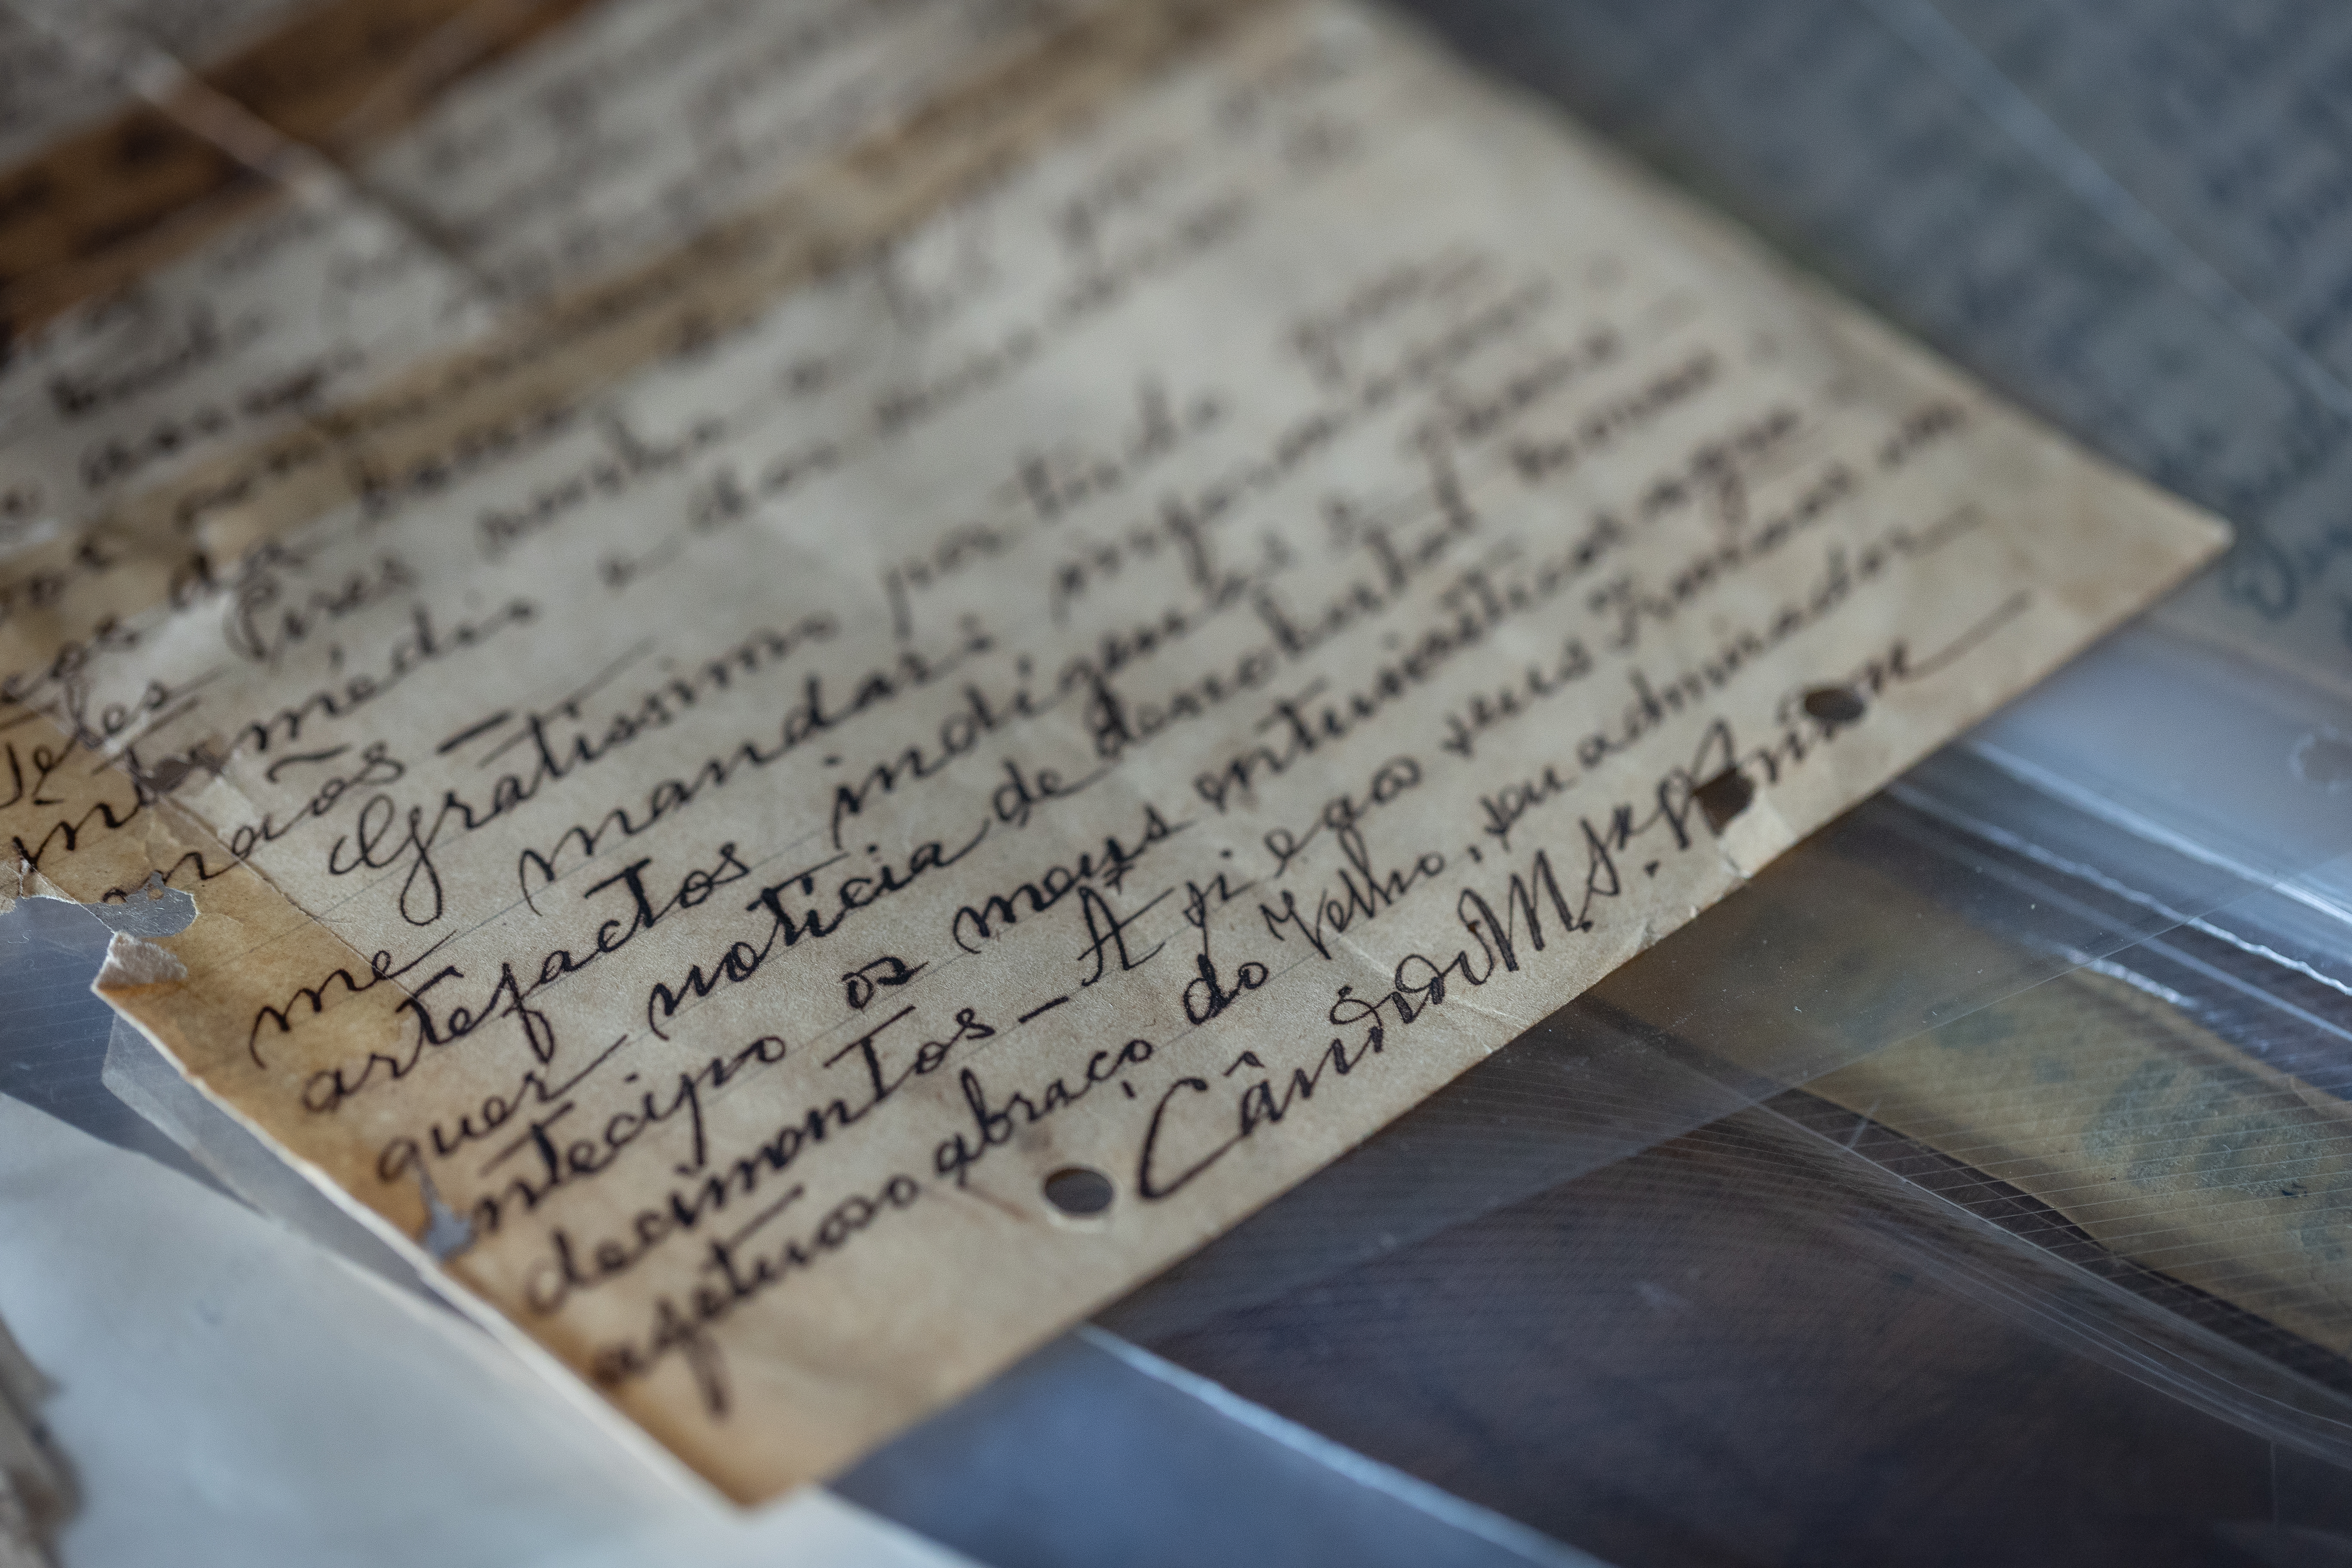 Imagem mostra pedaço de papel antigo, com trechos escritos à mão e assinatura no final do Marechal Cândido Rondon